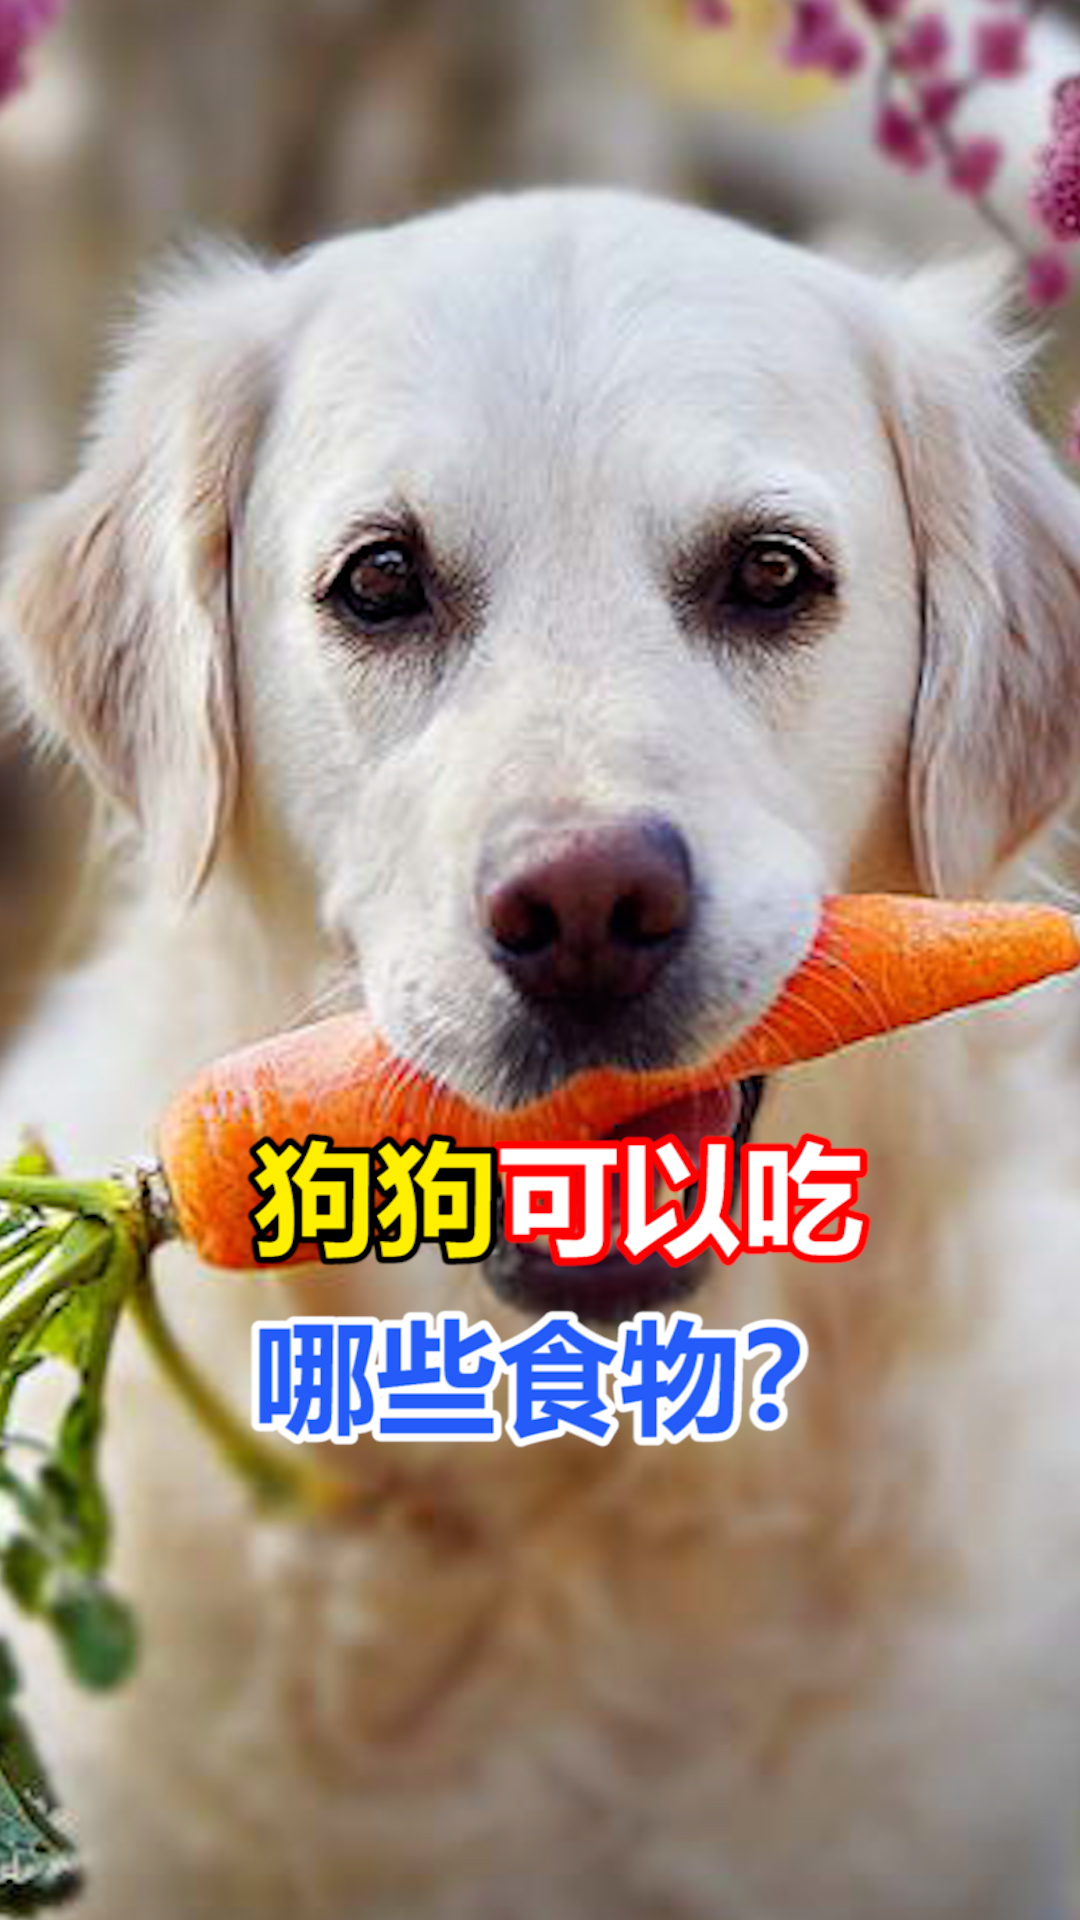 宠物养护知识!狗狗可以吃哪些食物?你知道吗?